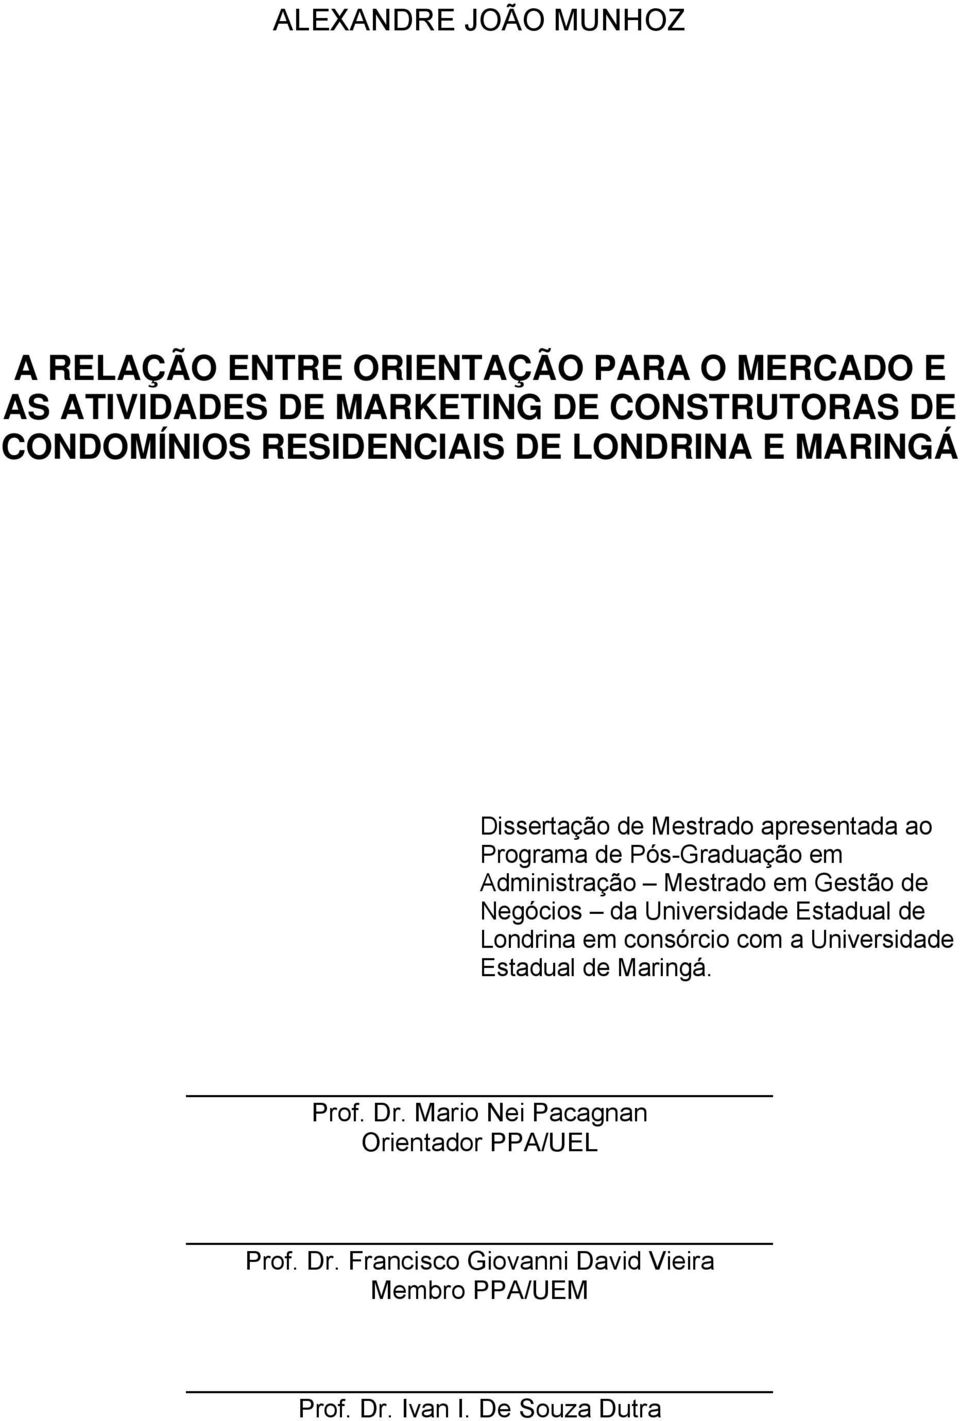 Mestrado em Gestão de Negócios da Universidade Estadual de Londrina em consórcio com a Universidade Estadual de Maringá.